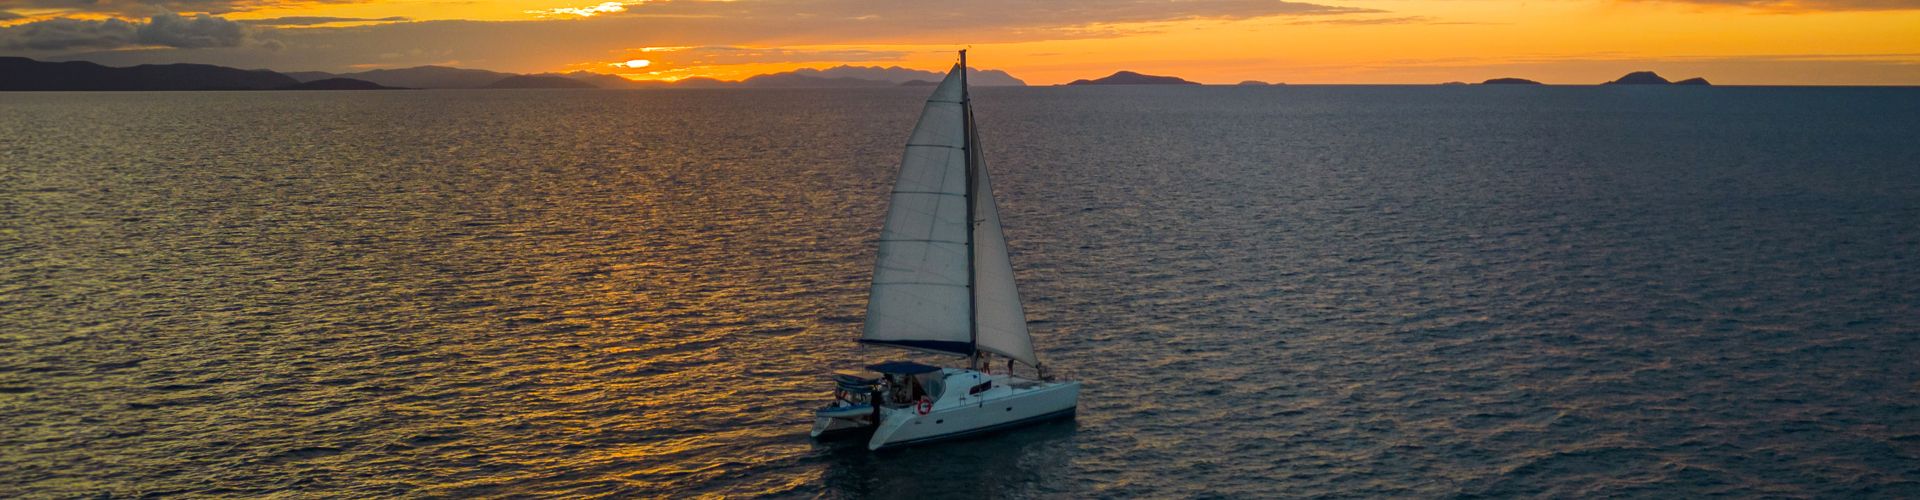 Sunset Cruise Charters - Sailing Whitsunday Image